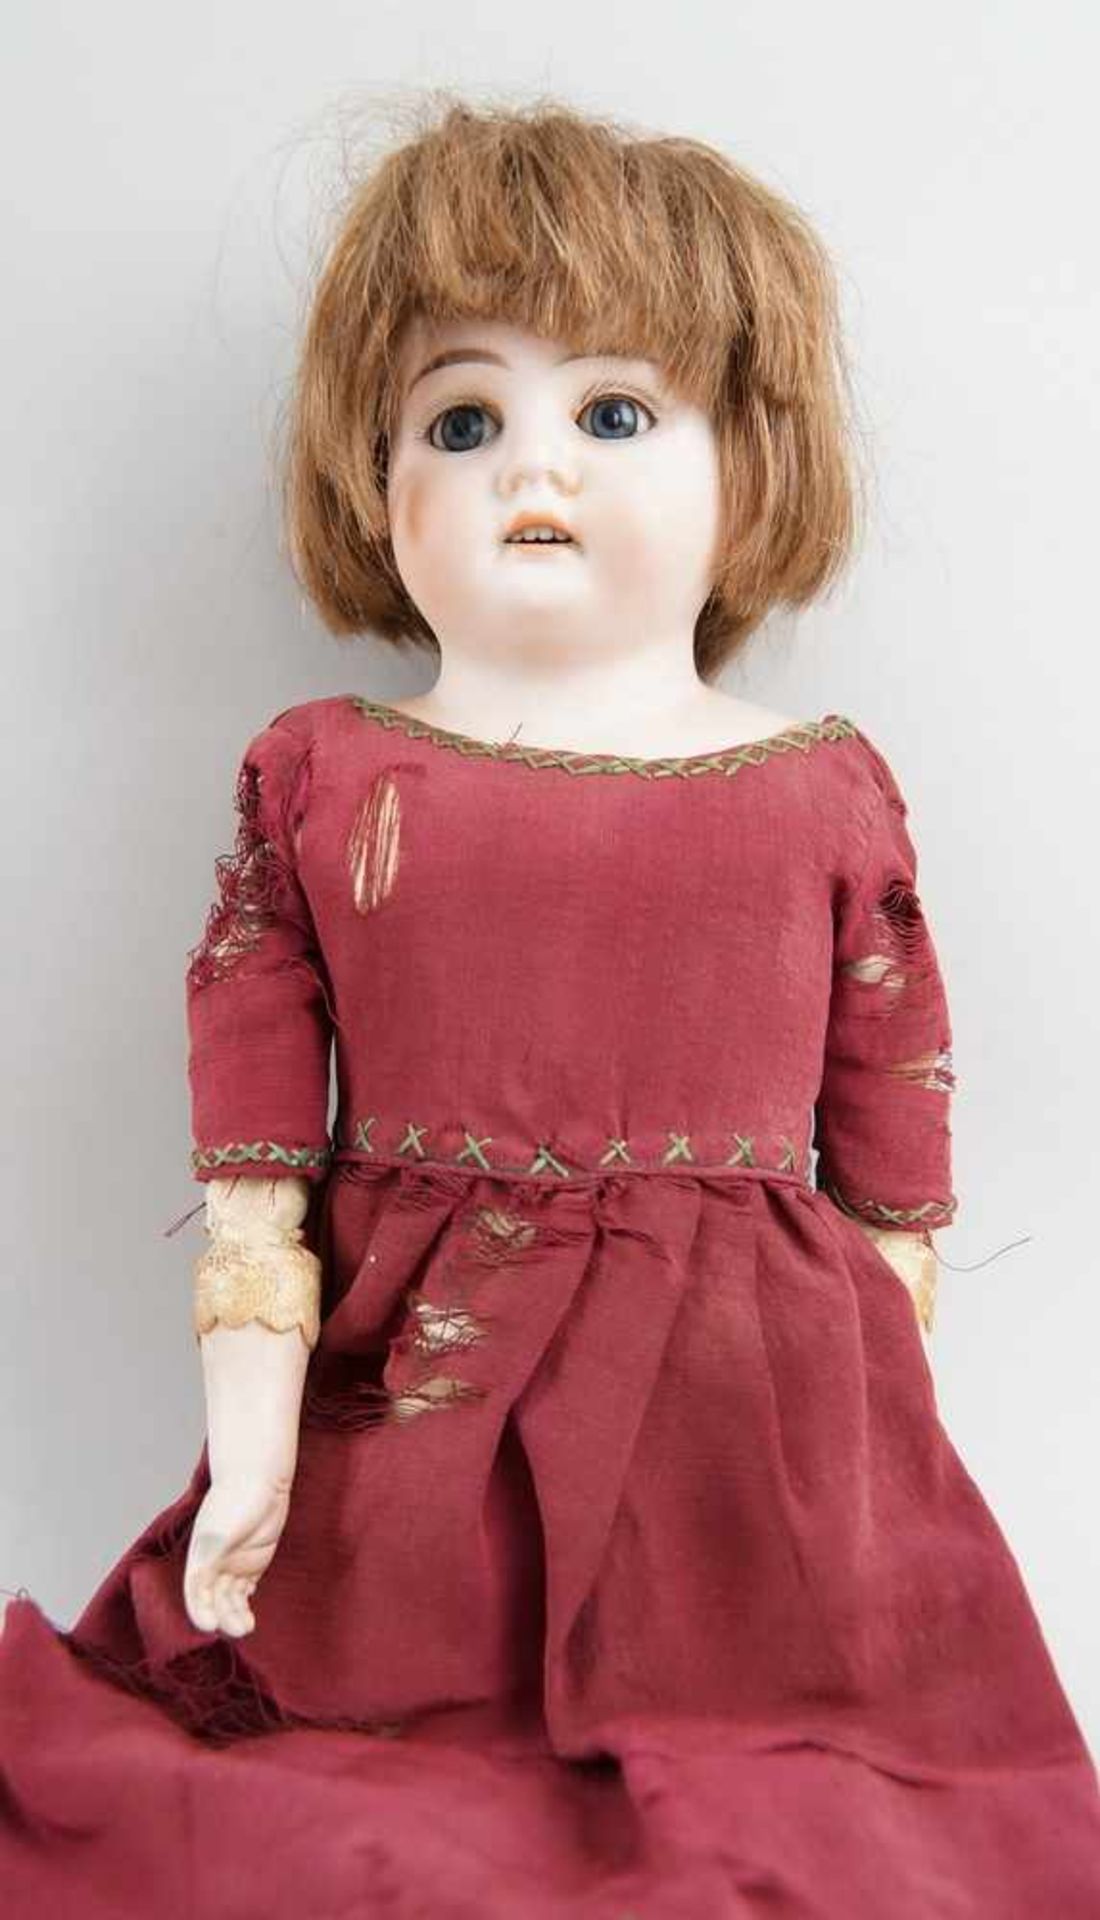 Puppe Armand Marseille 3200, 1896, bespielt, 39cm- - -24.00 % buyer's premium on the hammer - Bild 3 aus 5